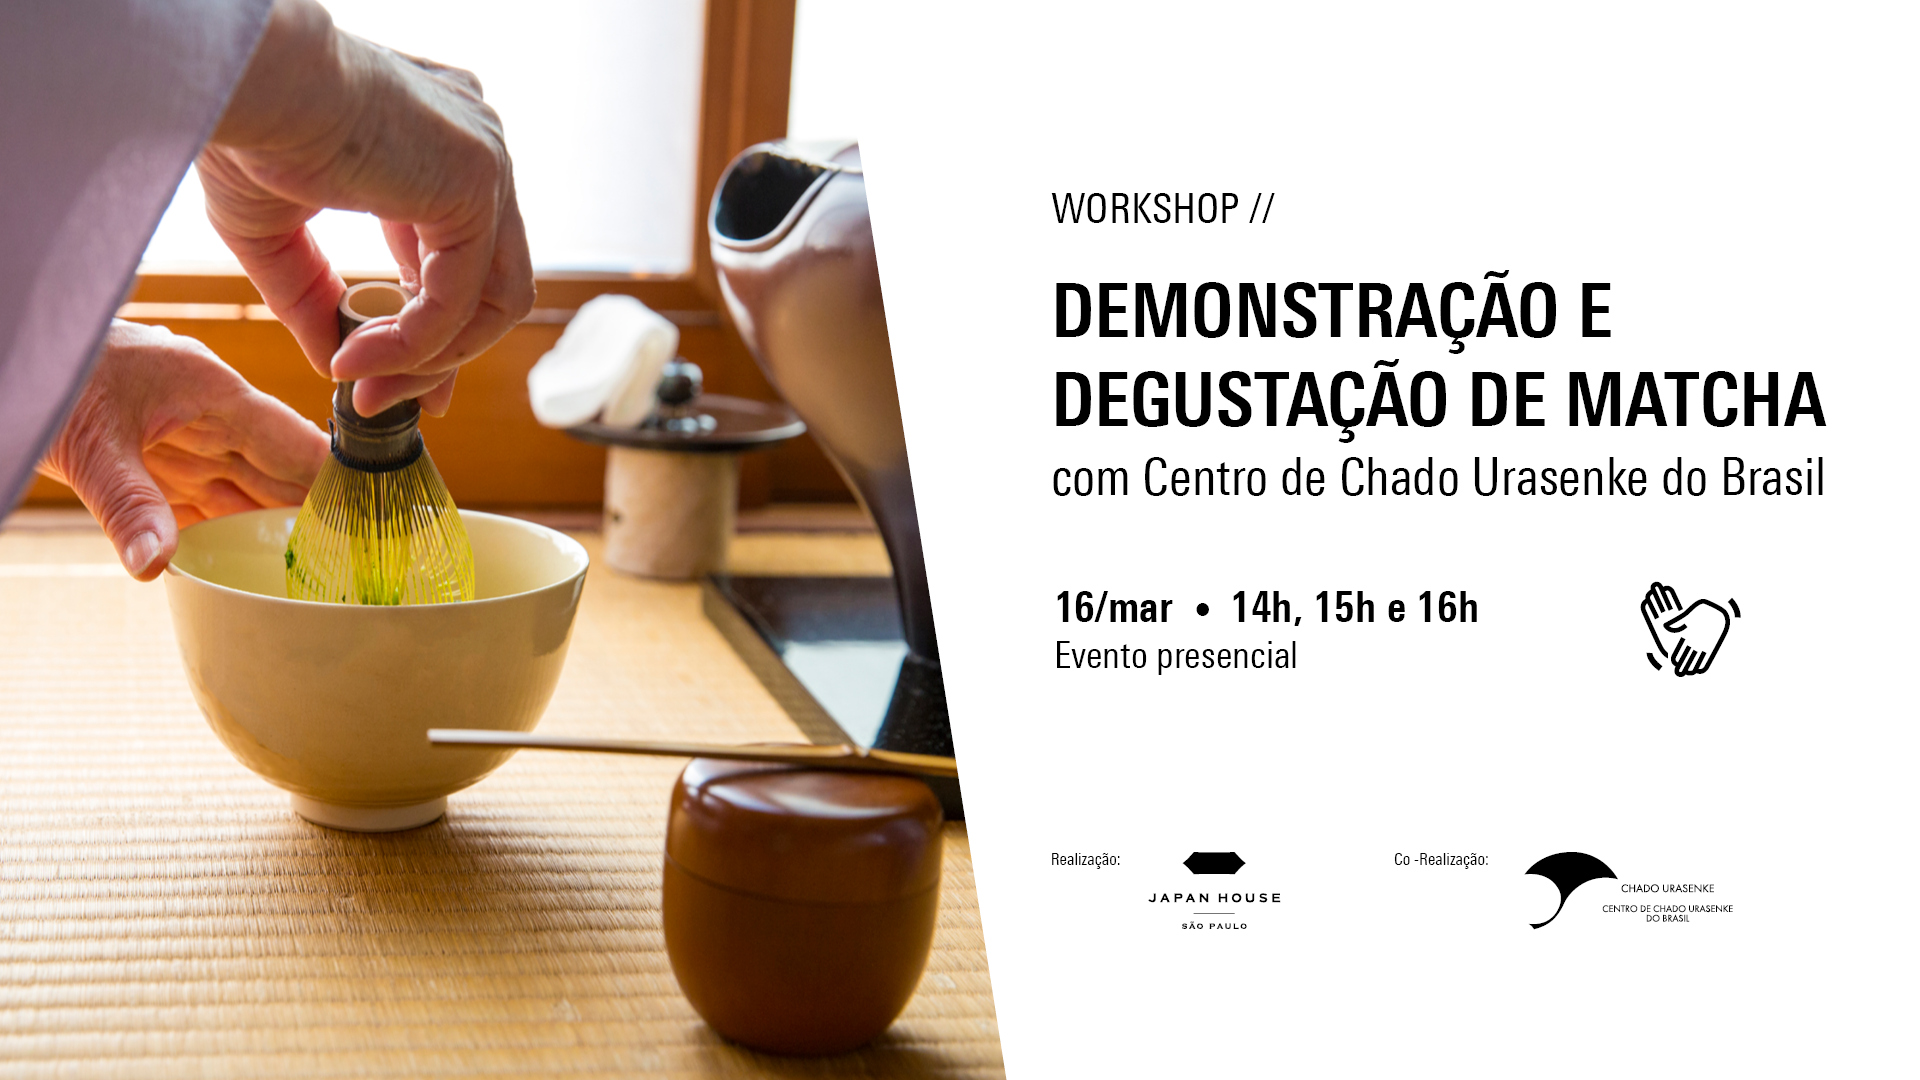 Workshop //  Demonstração e degustação de matcha com Centro de Chado Urasenke do Brasil. 16 de março, às 14h, 15h e 16h Evento presencial . Símbolo de Libras. Logos da Japan House São Paulo e Chado Urasenke.